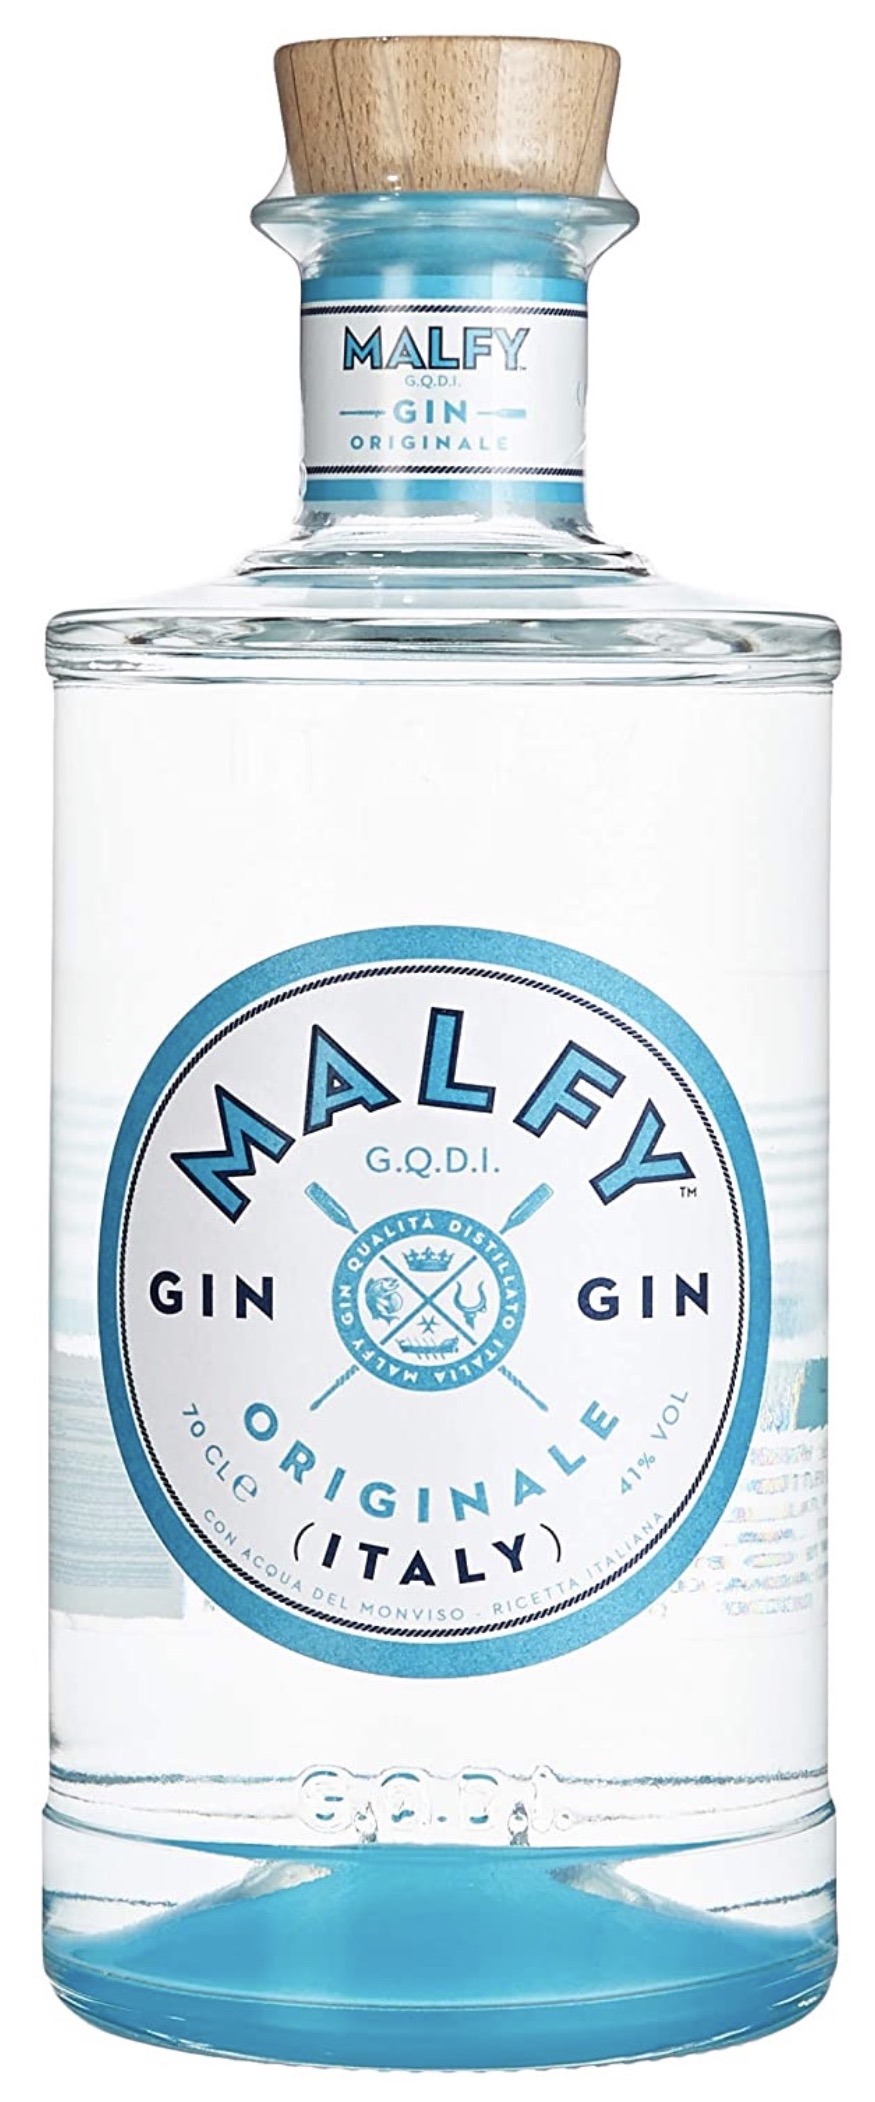 Malfy Gin Orginale 41% vol. 0,7L